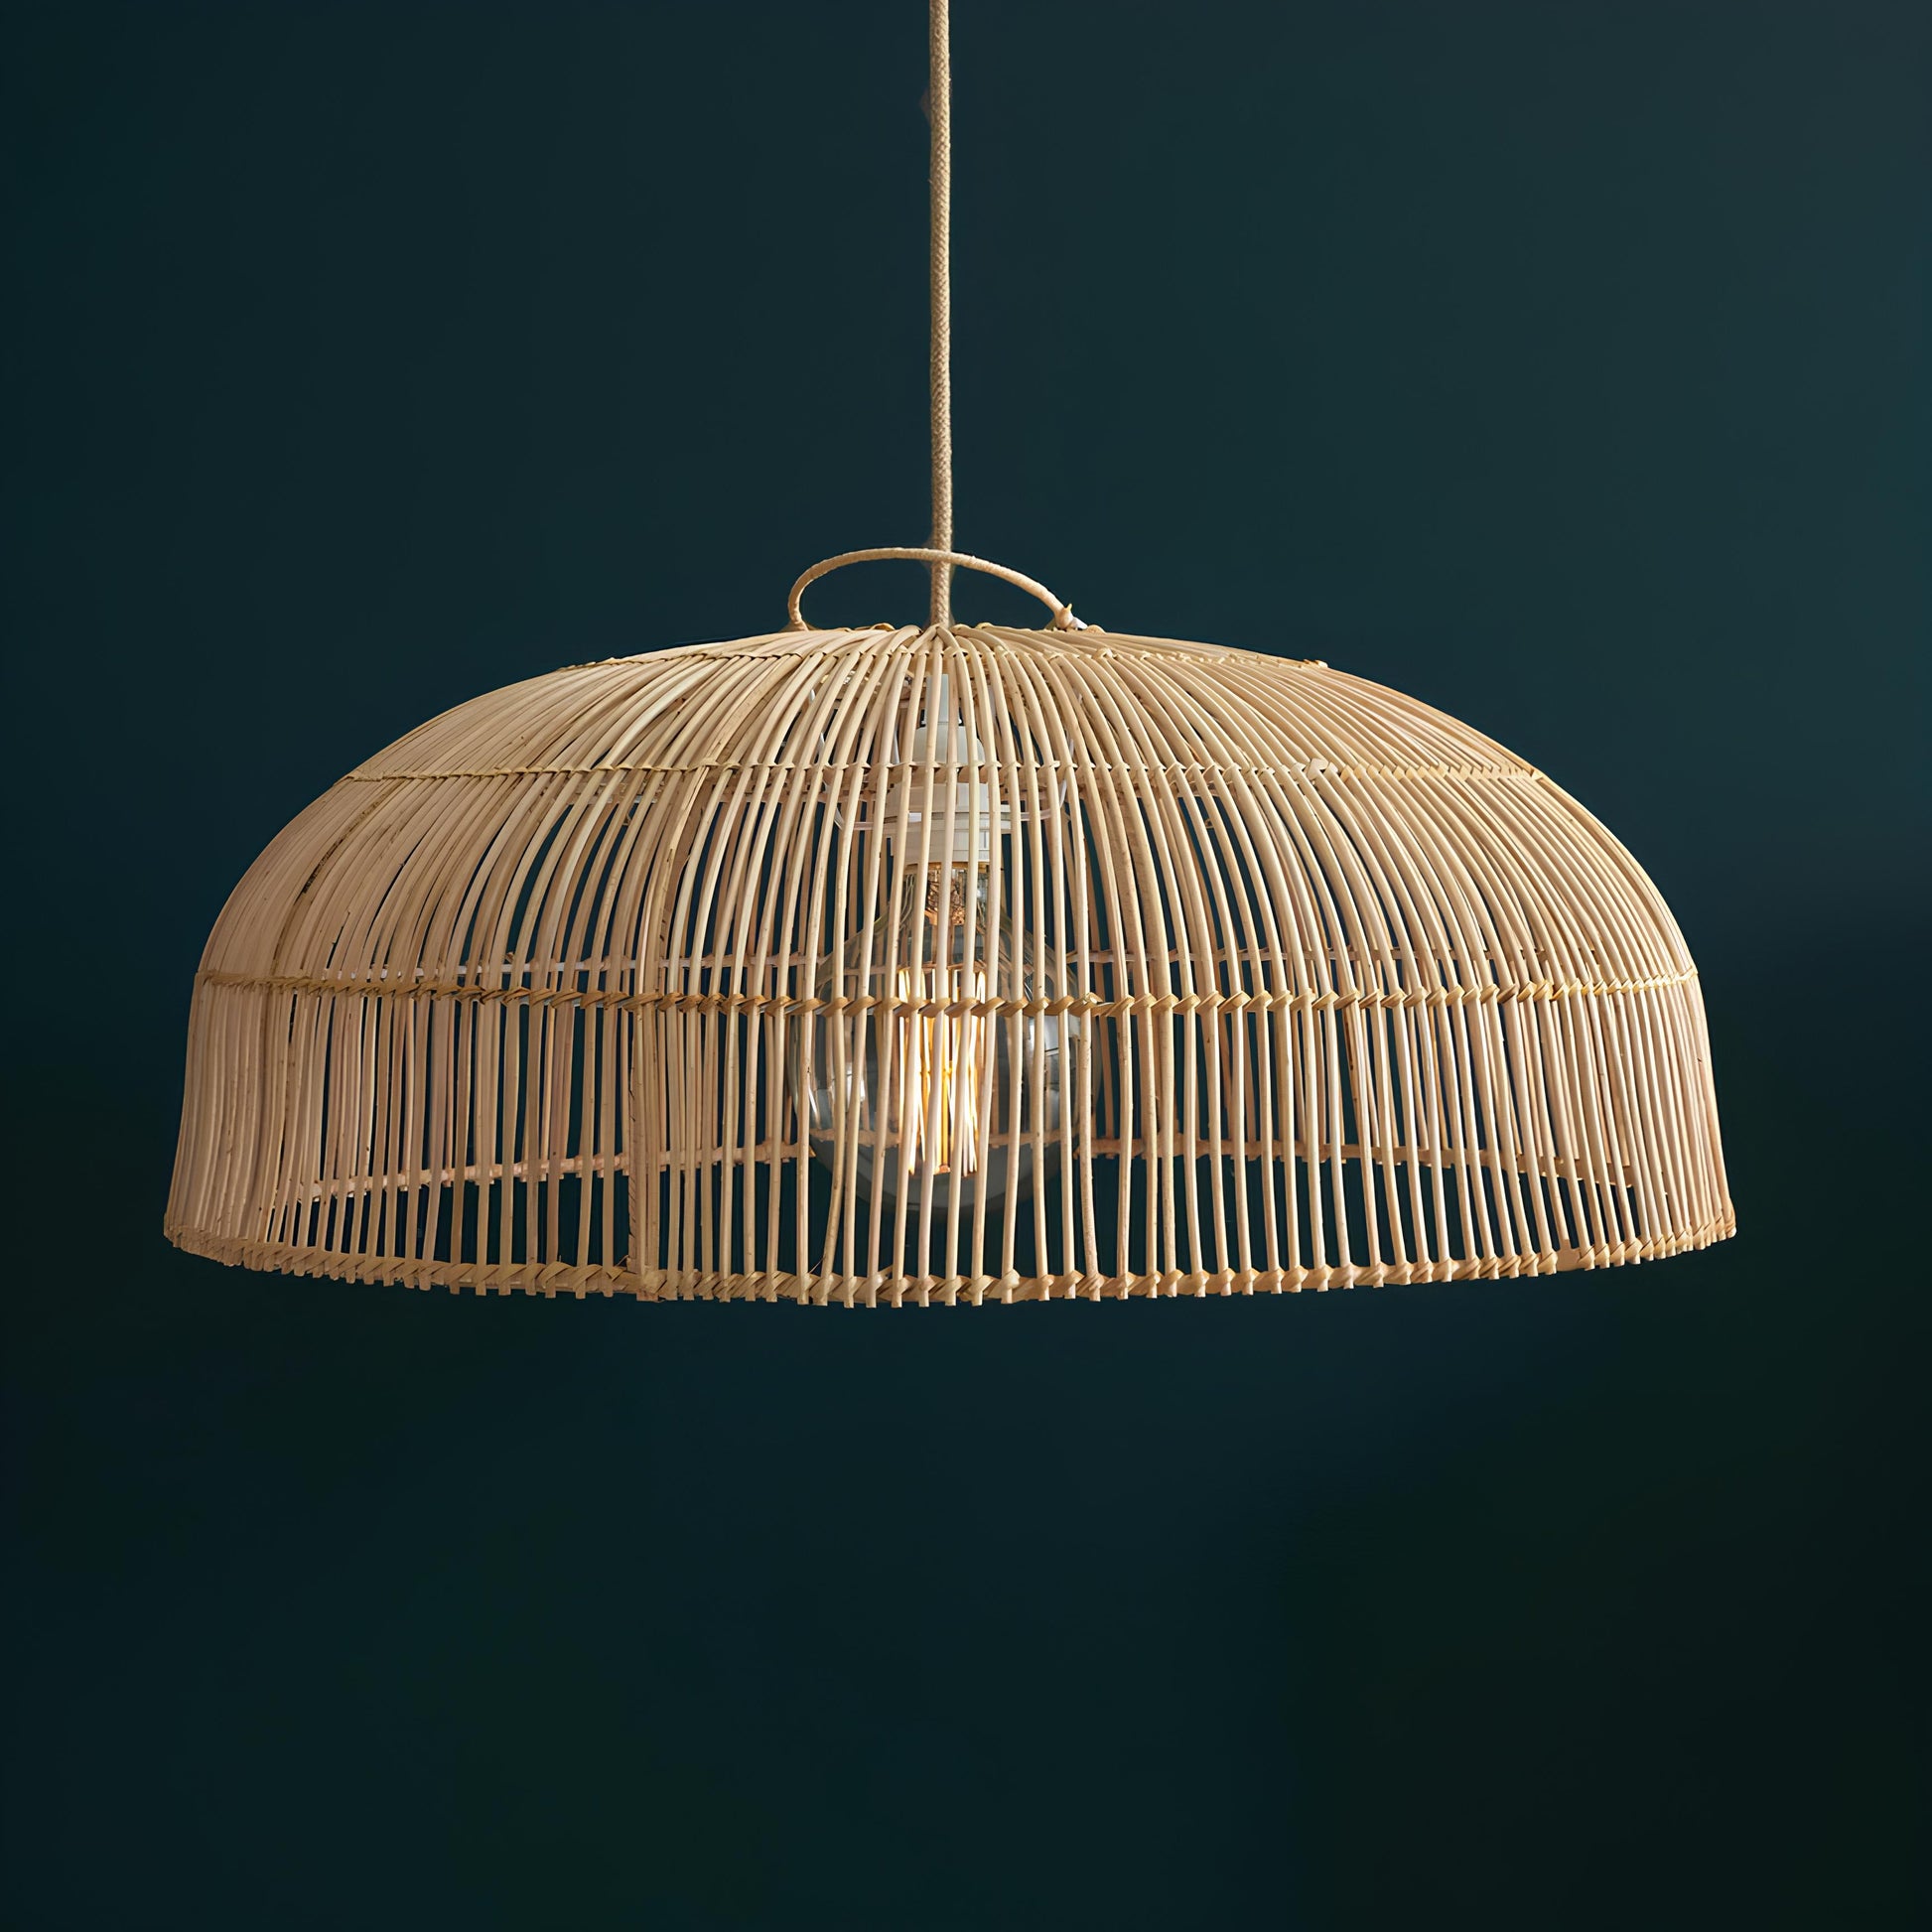 Bamboo Hanging lamp for Living Room | Rattan Pendant light | Cane ceiling light - Anbu - Akway